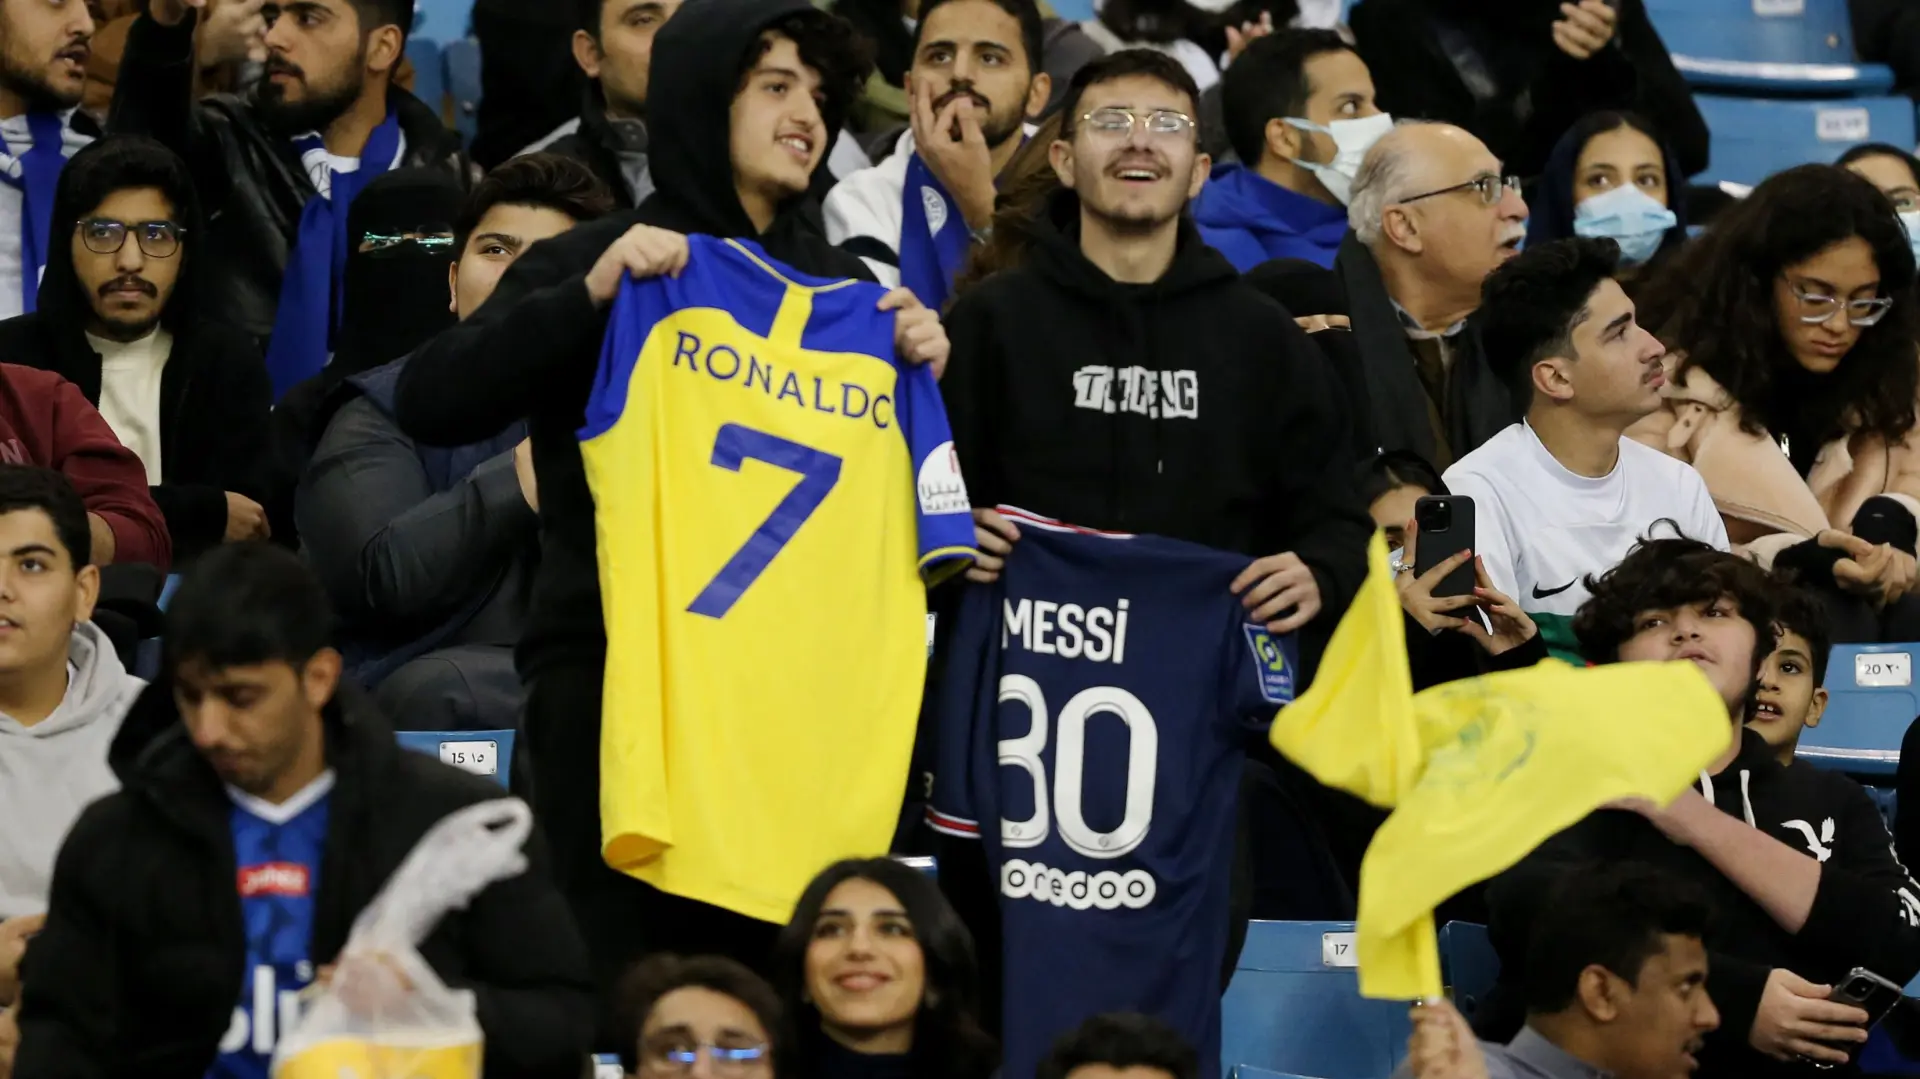 Messi_Ronaldo_foto_Reuters-63c9970b92941.webp